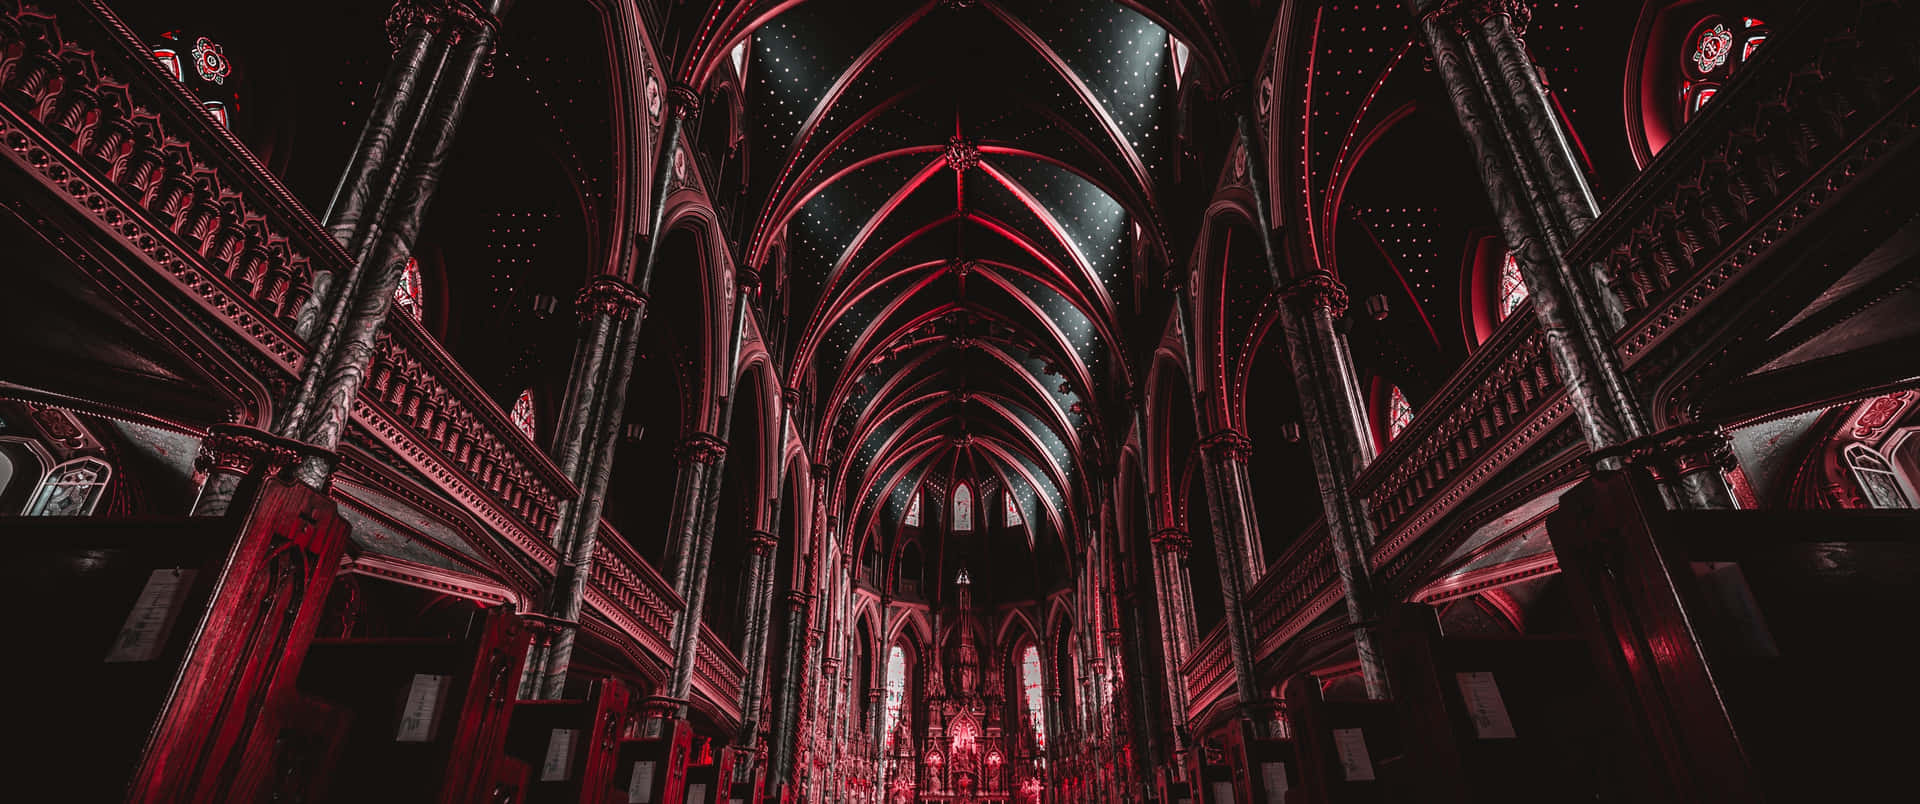 Notredame-kathedrale Mit Bearbeitetem Gotischem Innenraum Wallpaper